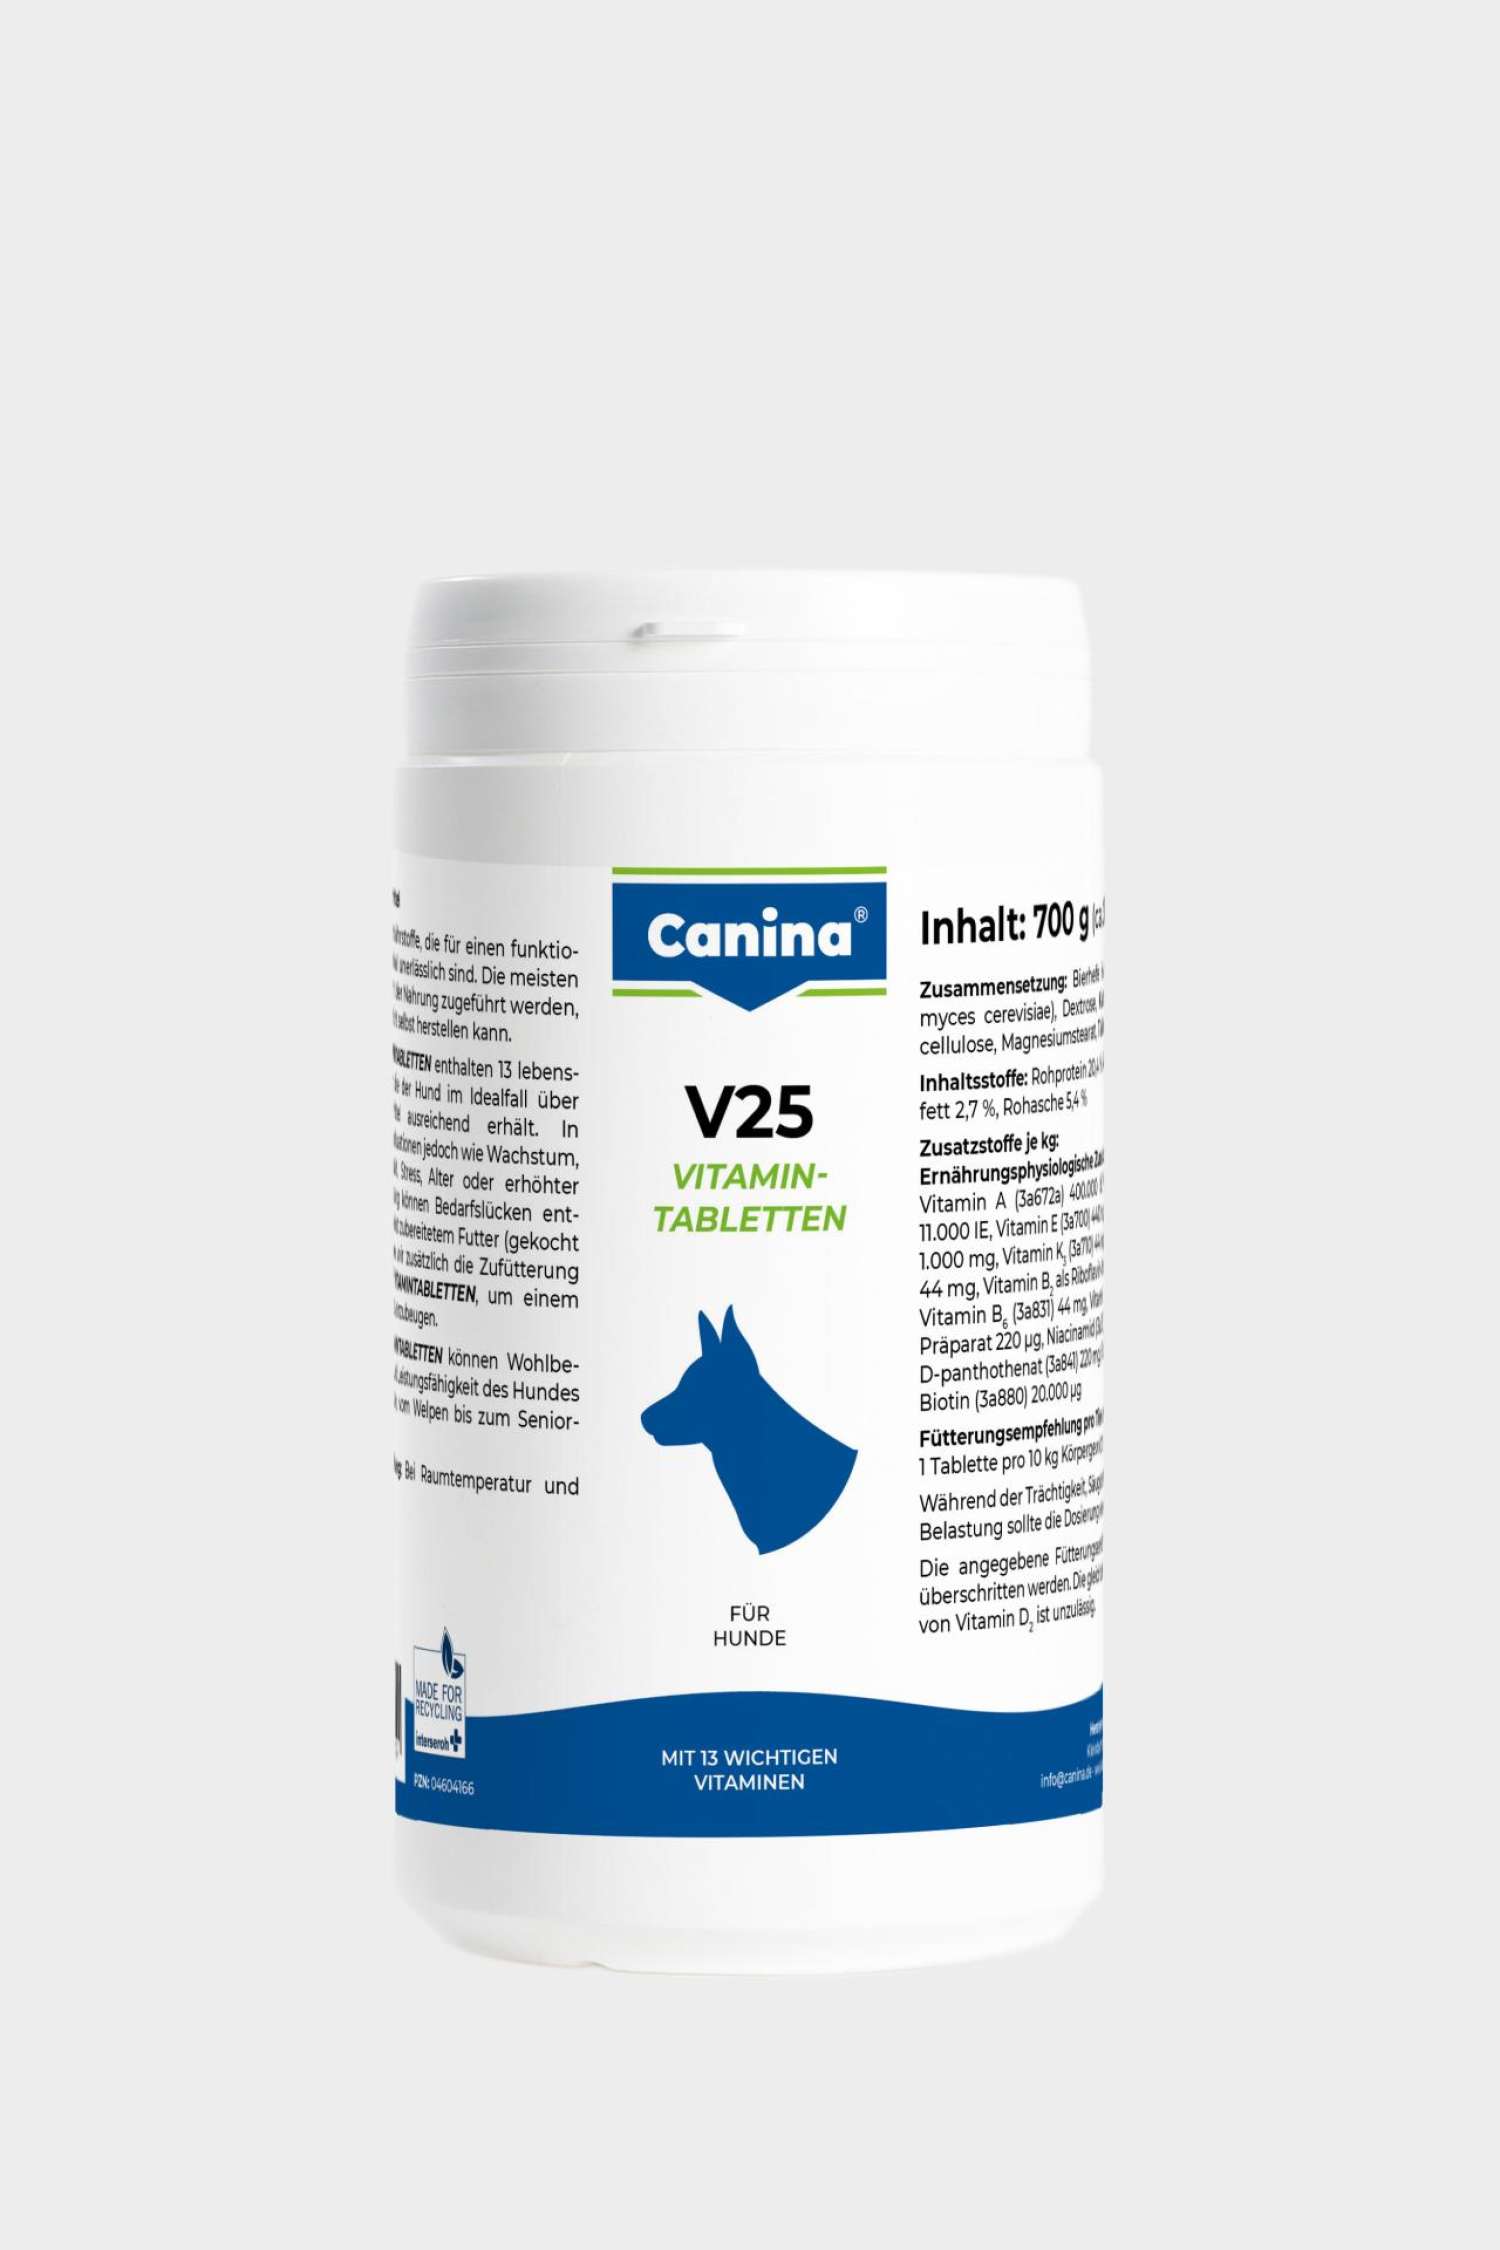 V25 vitamin tablets